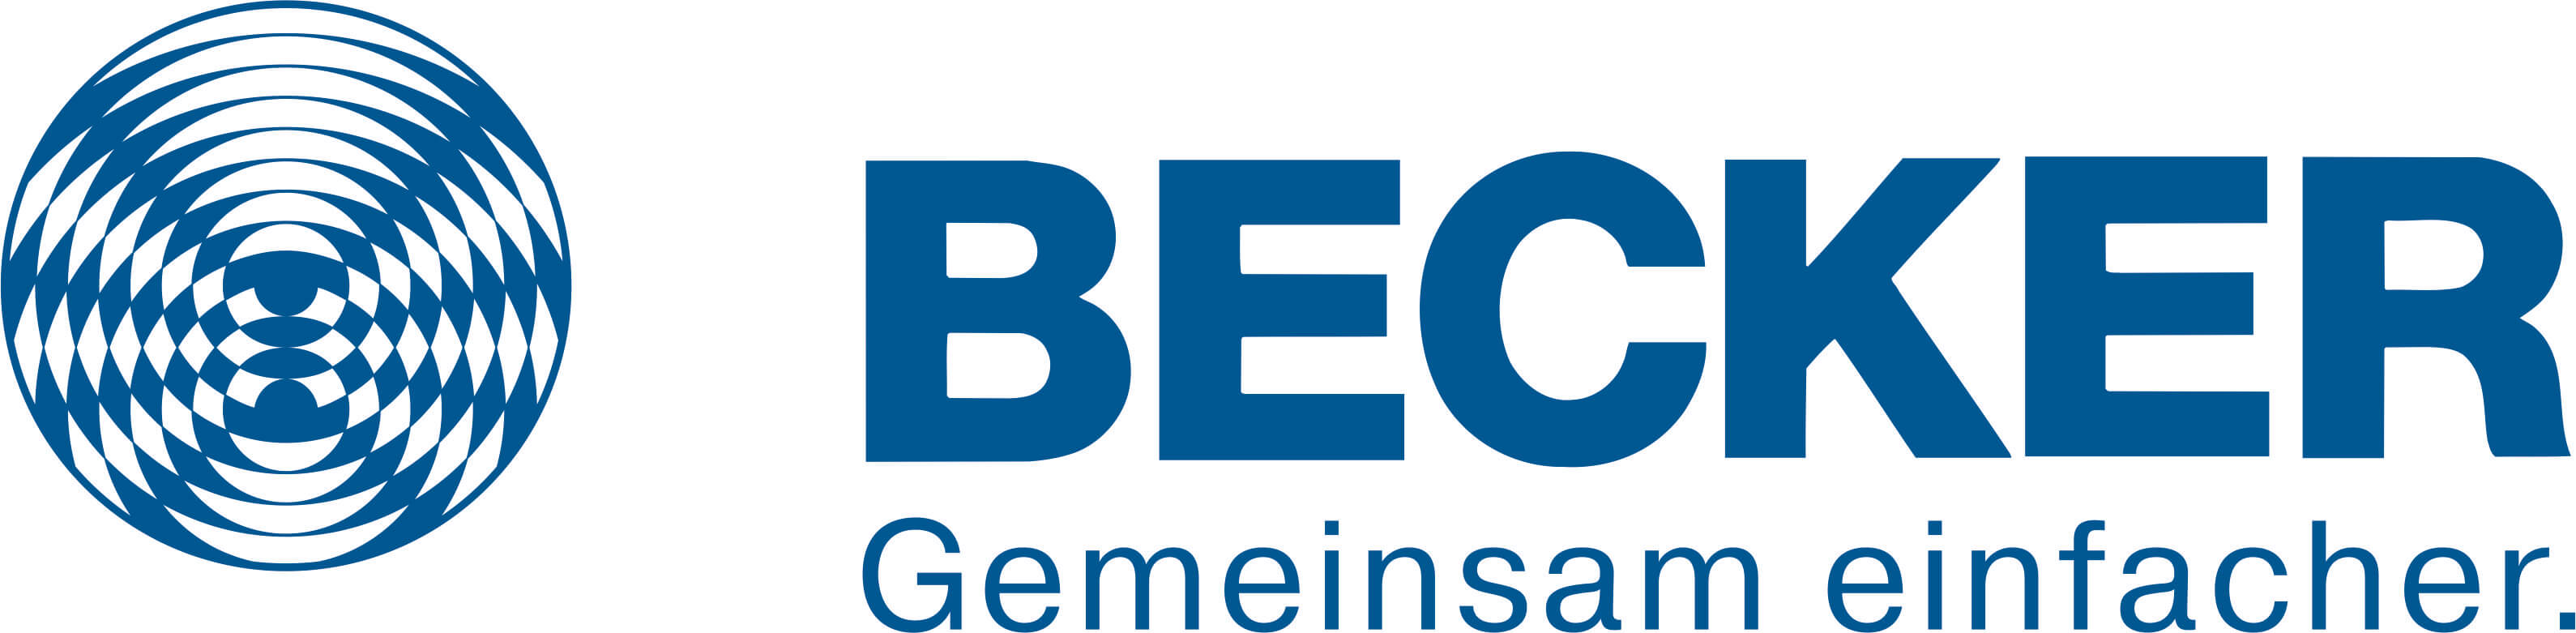 Becker_Logo